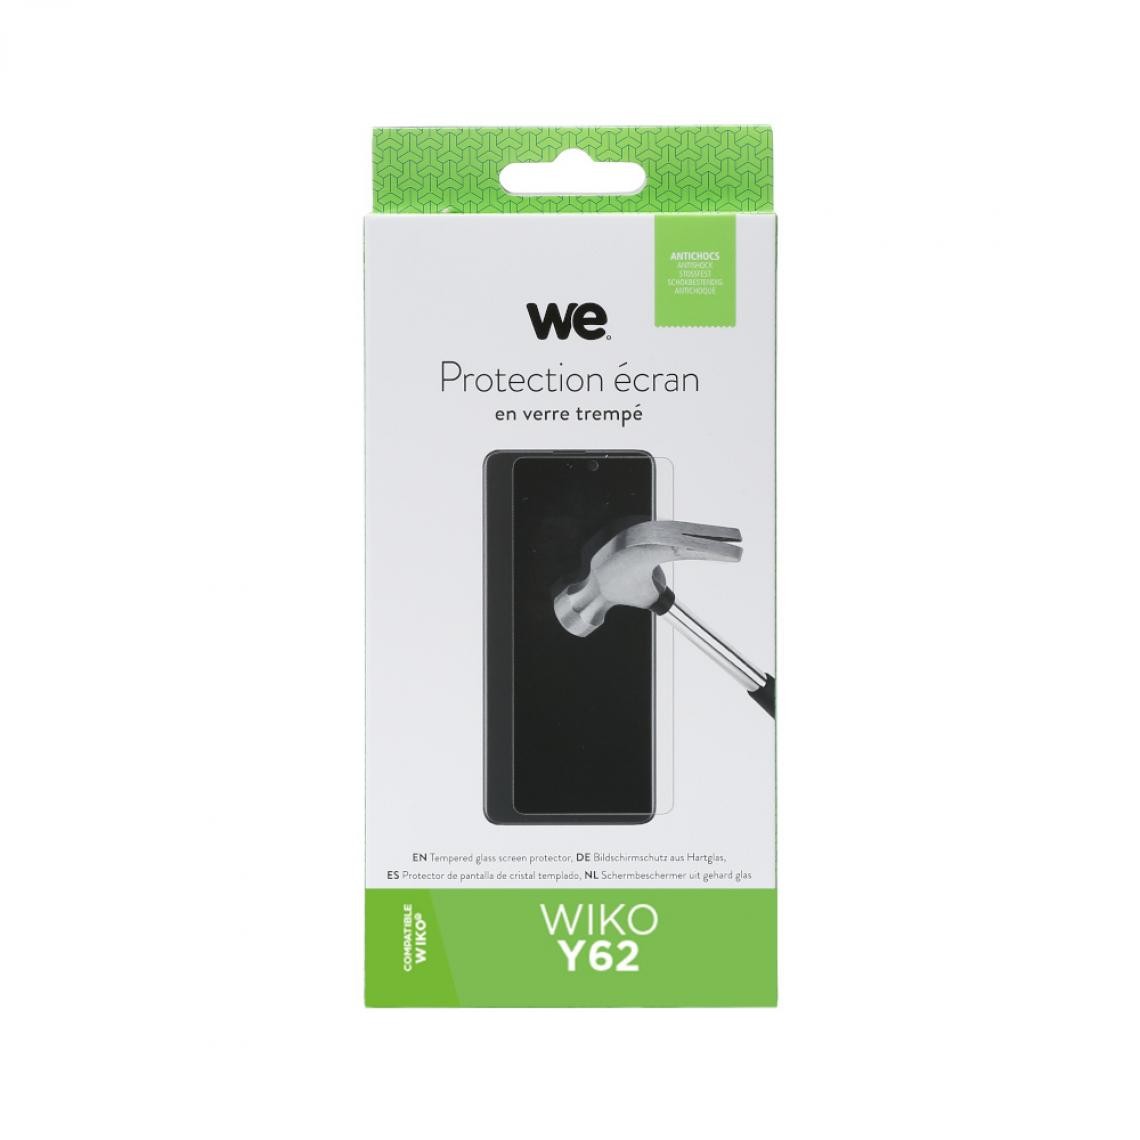 We - WE Verre trempé WIKO Y62: Protection écran - anti-rayures - anti-bulles d'air - ultra-résistant - dureté 9H Glass - Coque, étui smartphone